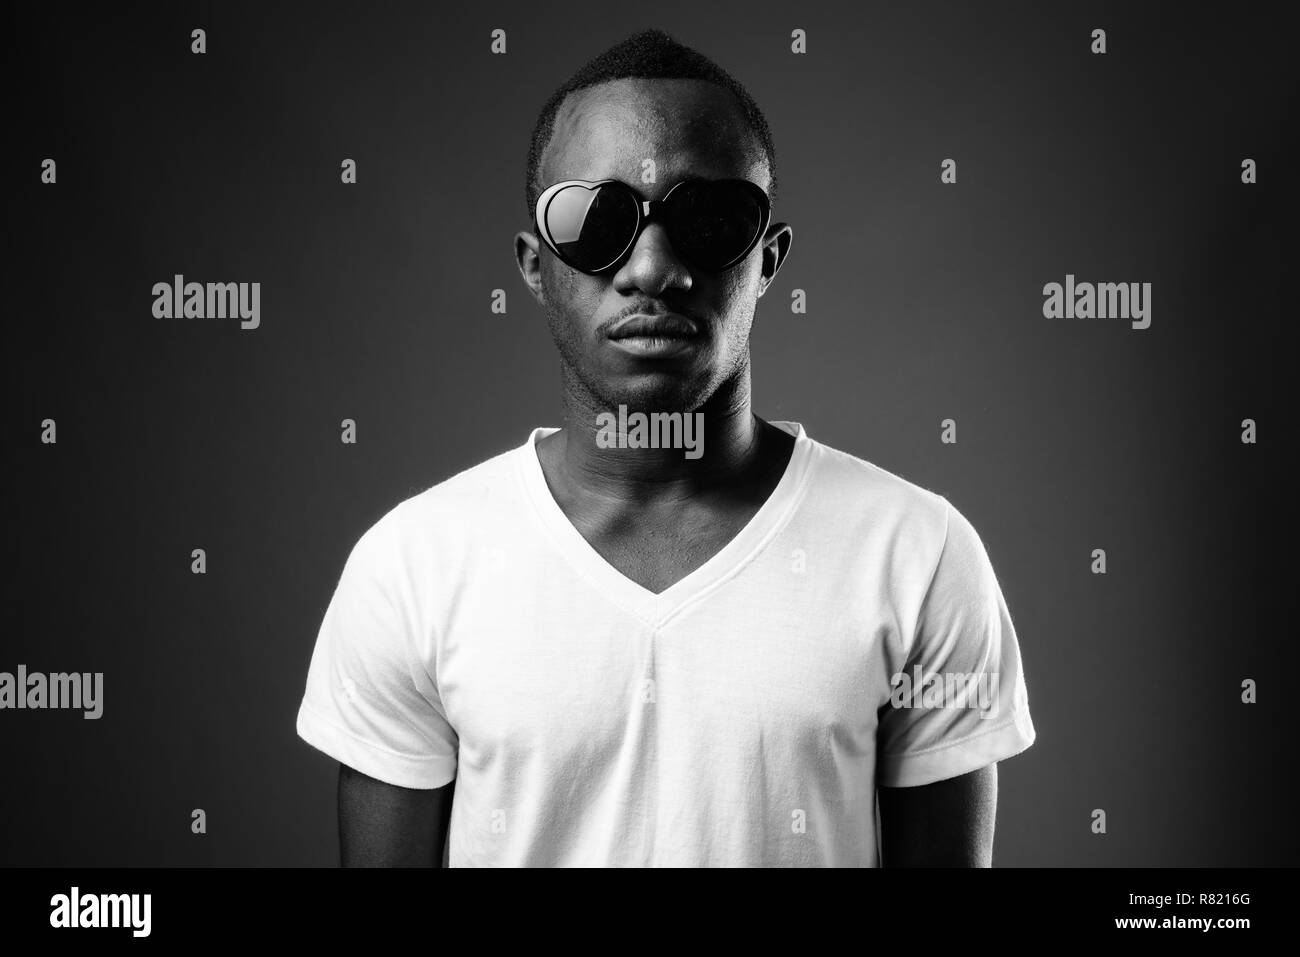 El hombre africano joven con gafas de sol en blanco y negro Foto de stock